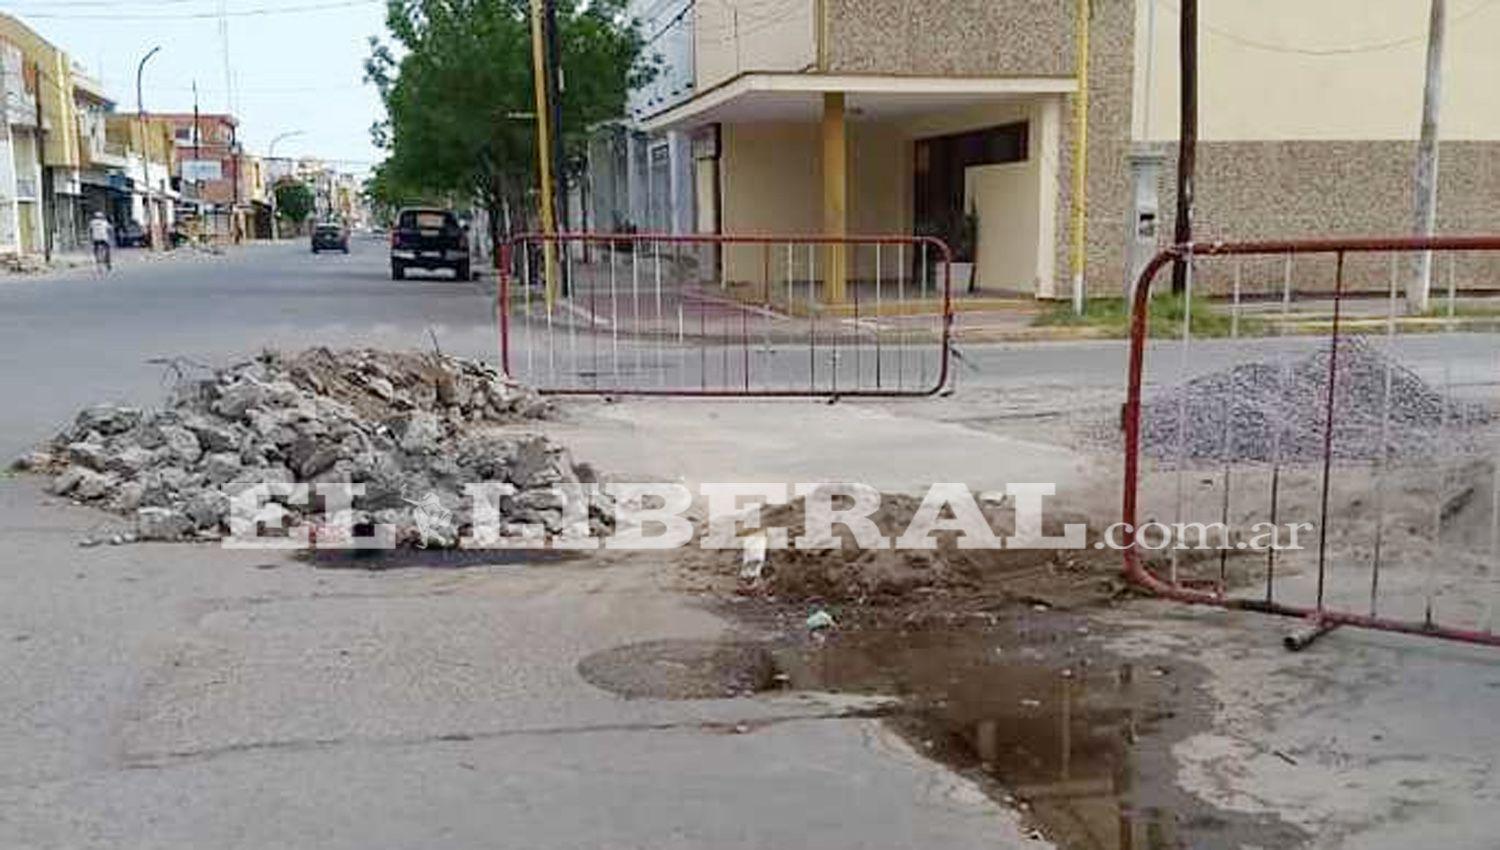 La comuna de Friacuteas desarrolla un plan de bacheo y de arreglo de calles